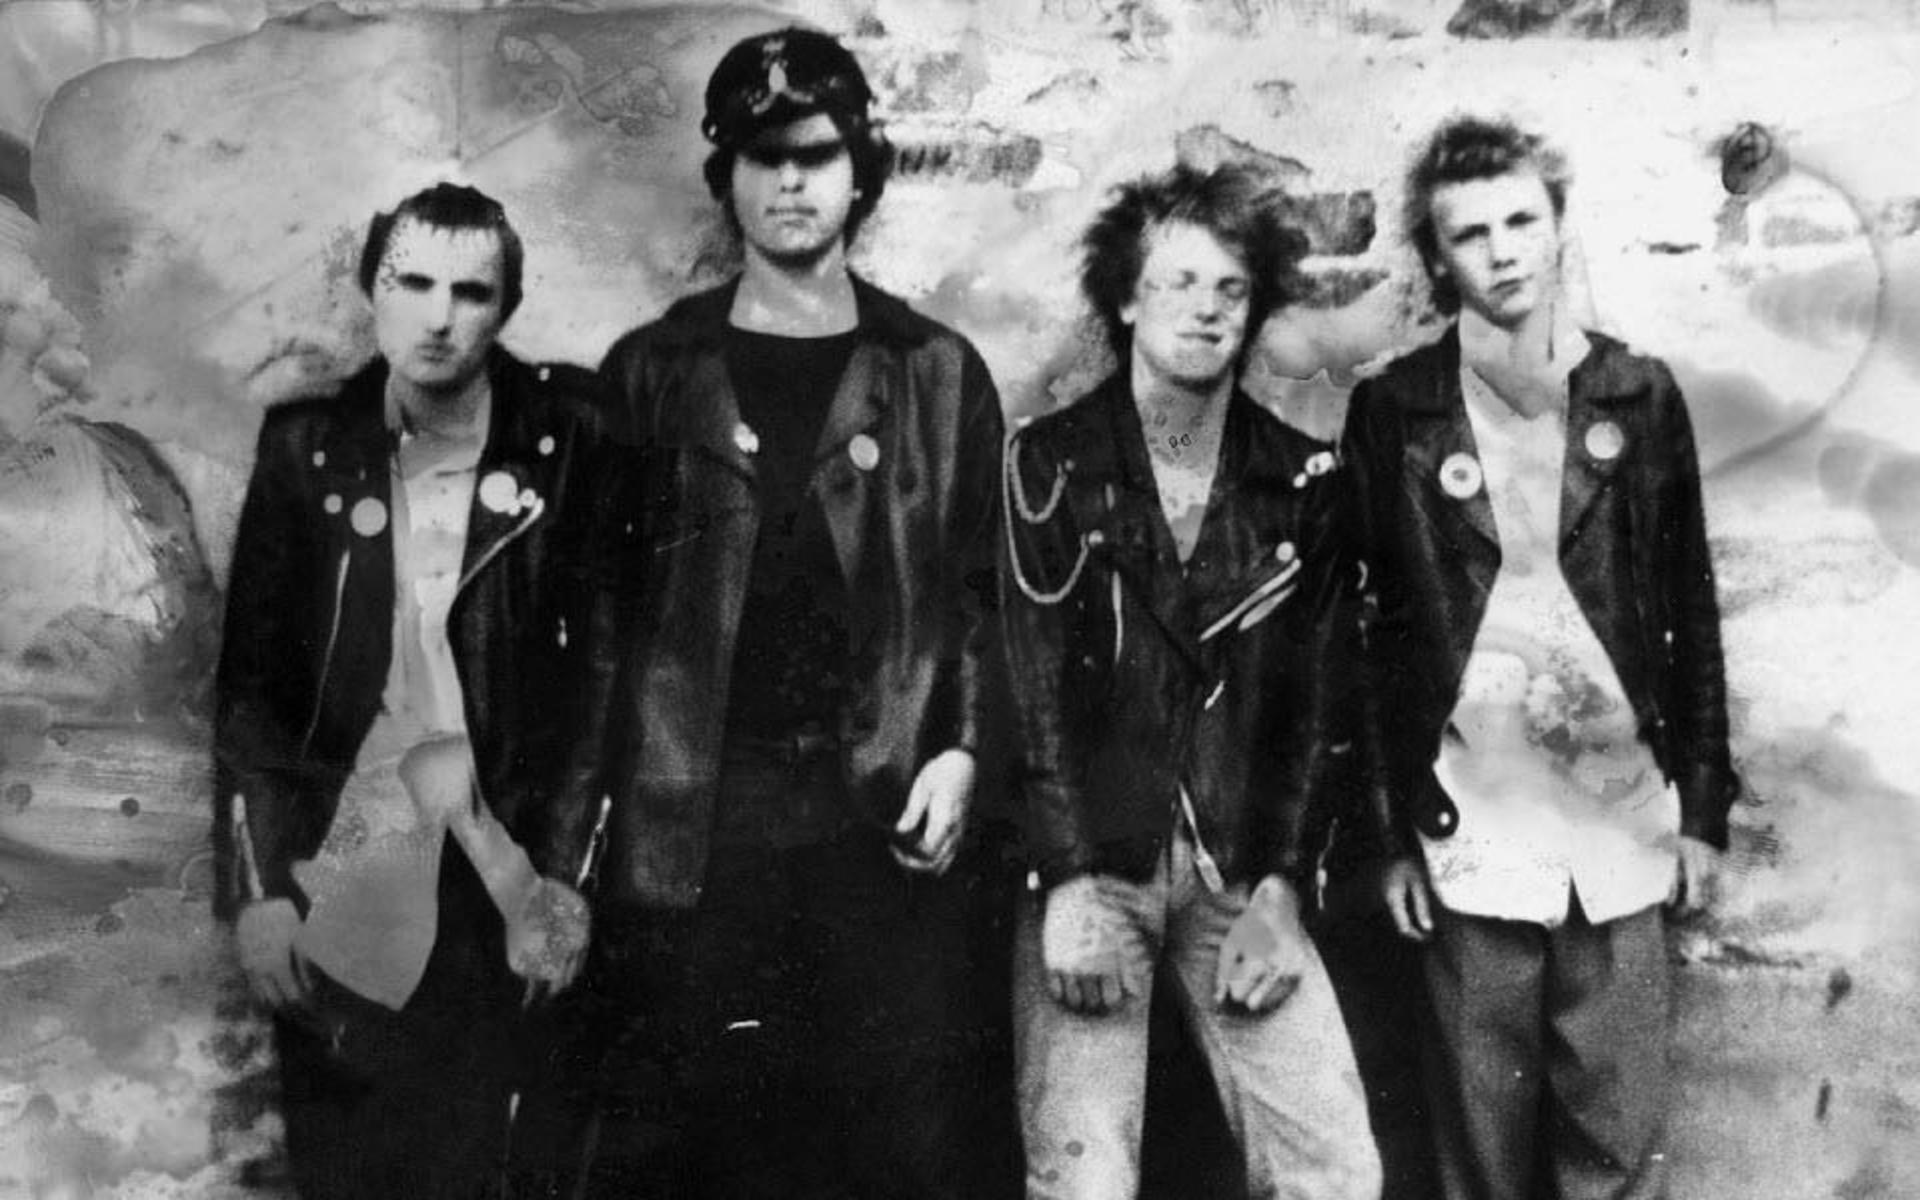 Bandet Rost, som senare blev Ugly Spots. Bilden är tagen i Oxelösund 1979-1980. Längst till vänster syns Ulf Hansen och längst till höger står Thomas Krohn.  Senare bytte Ugly Spots – under påverkan från den inre kärnan inom organisationen BSS (Bevara Sverige Svenskt) – namn till Ultima Thule och ändrade inriktning. Snart rörde de sig i högerextrema miljöer och spelade med vit makt-band som ”Vit aggression”.